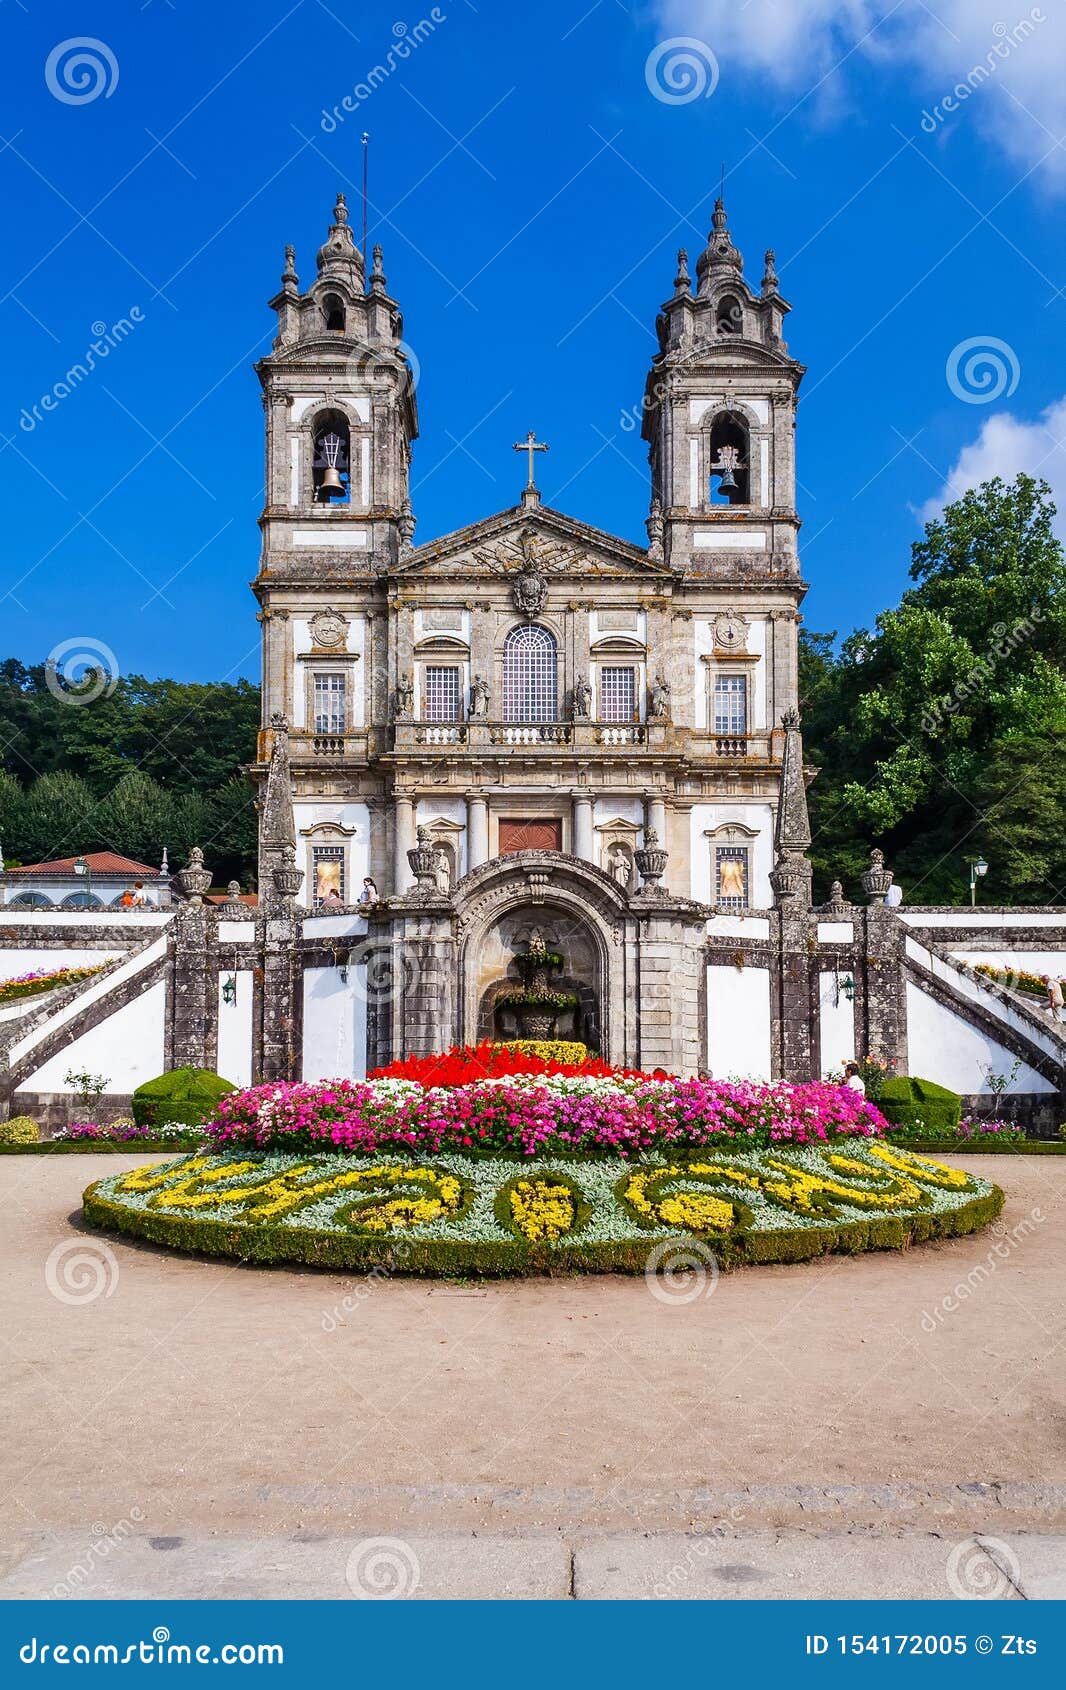 braga, portugal. basilica of bom jesus do monte sanctuary